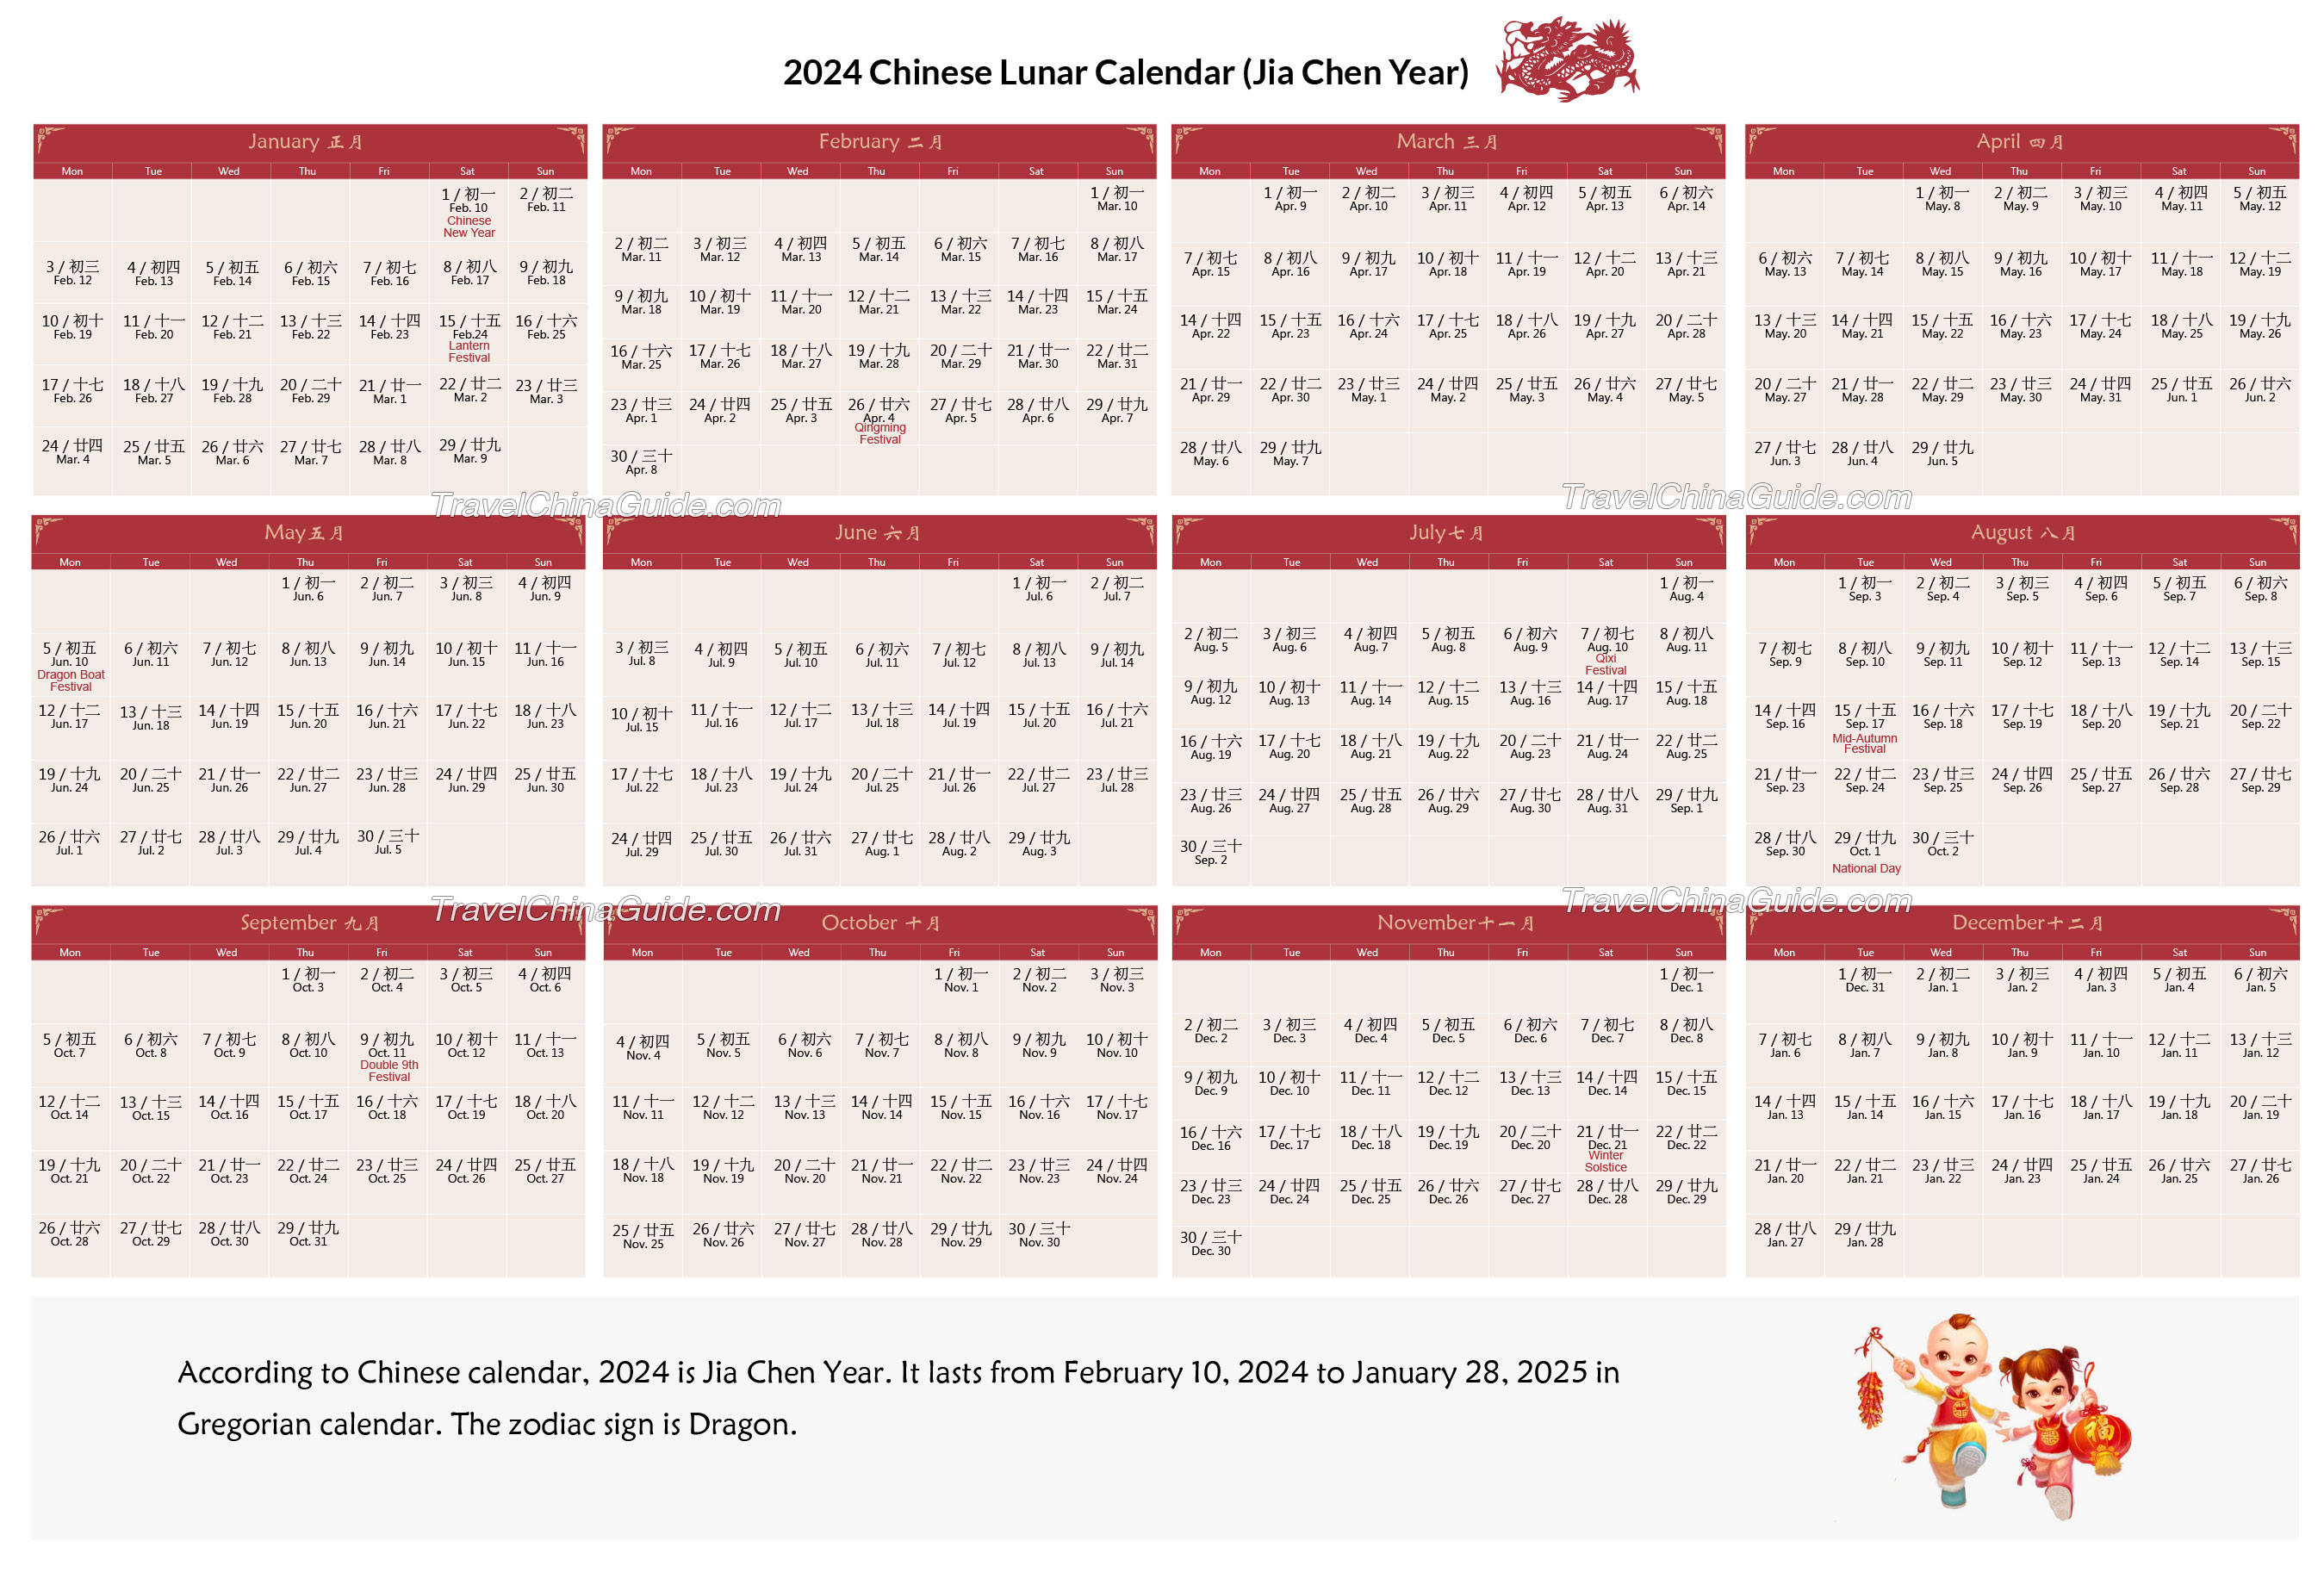 Lunisolar Calendar 2022 Chinese Calendar 2022: Gregorian To Lunar Days Converter, Lucky Day